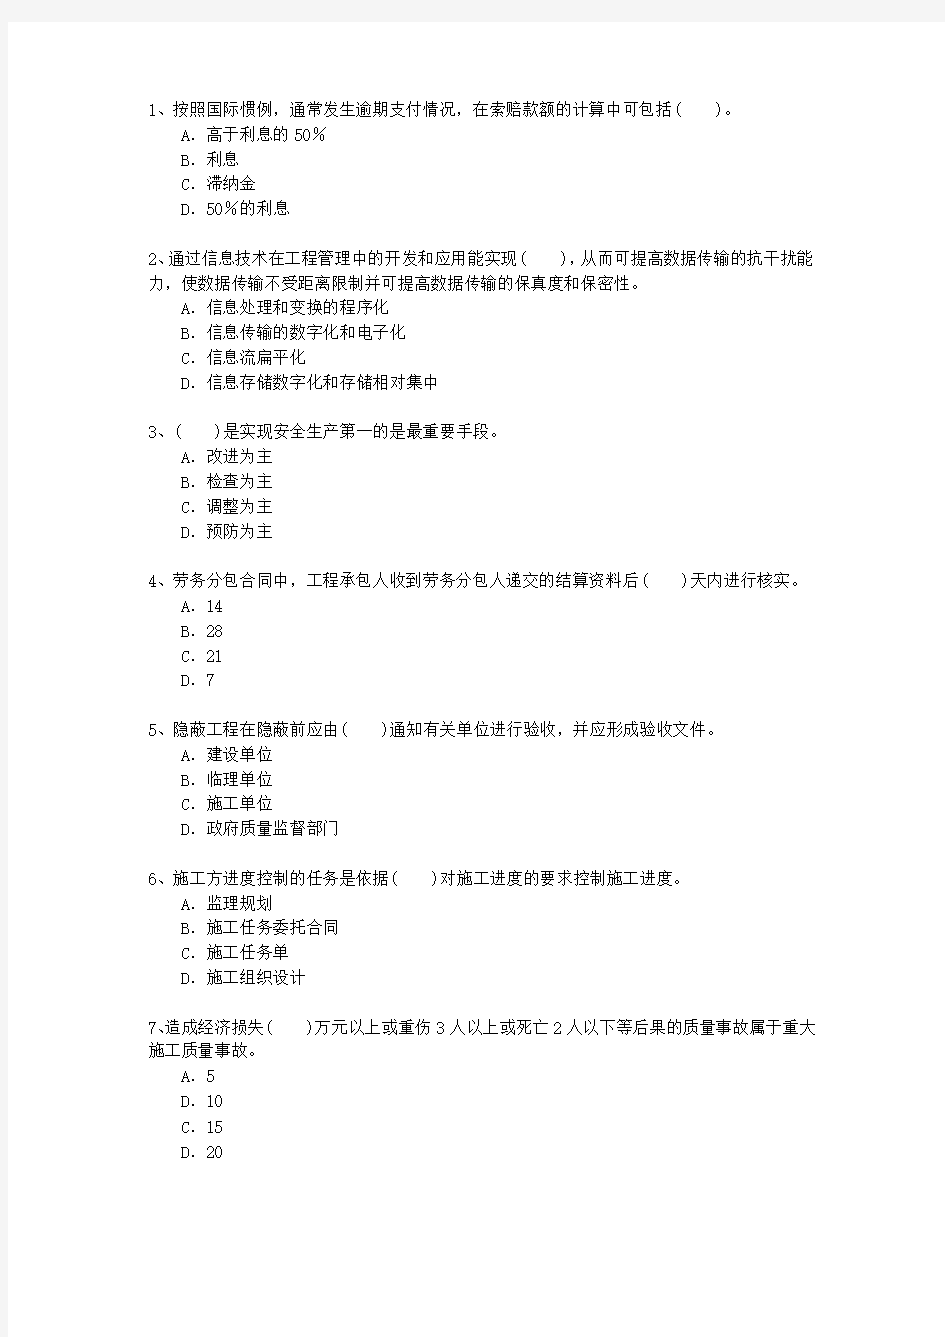 2013三级福建省建造师《法律法规》考试题库